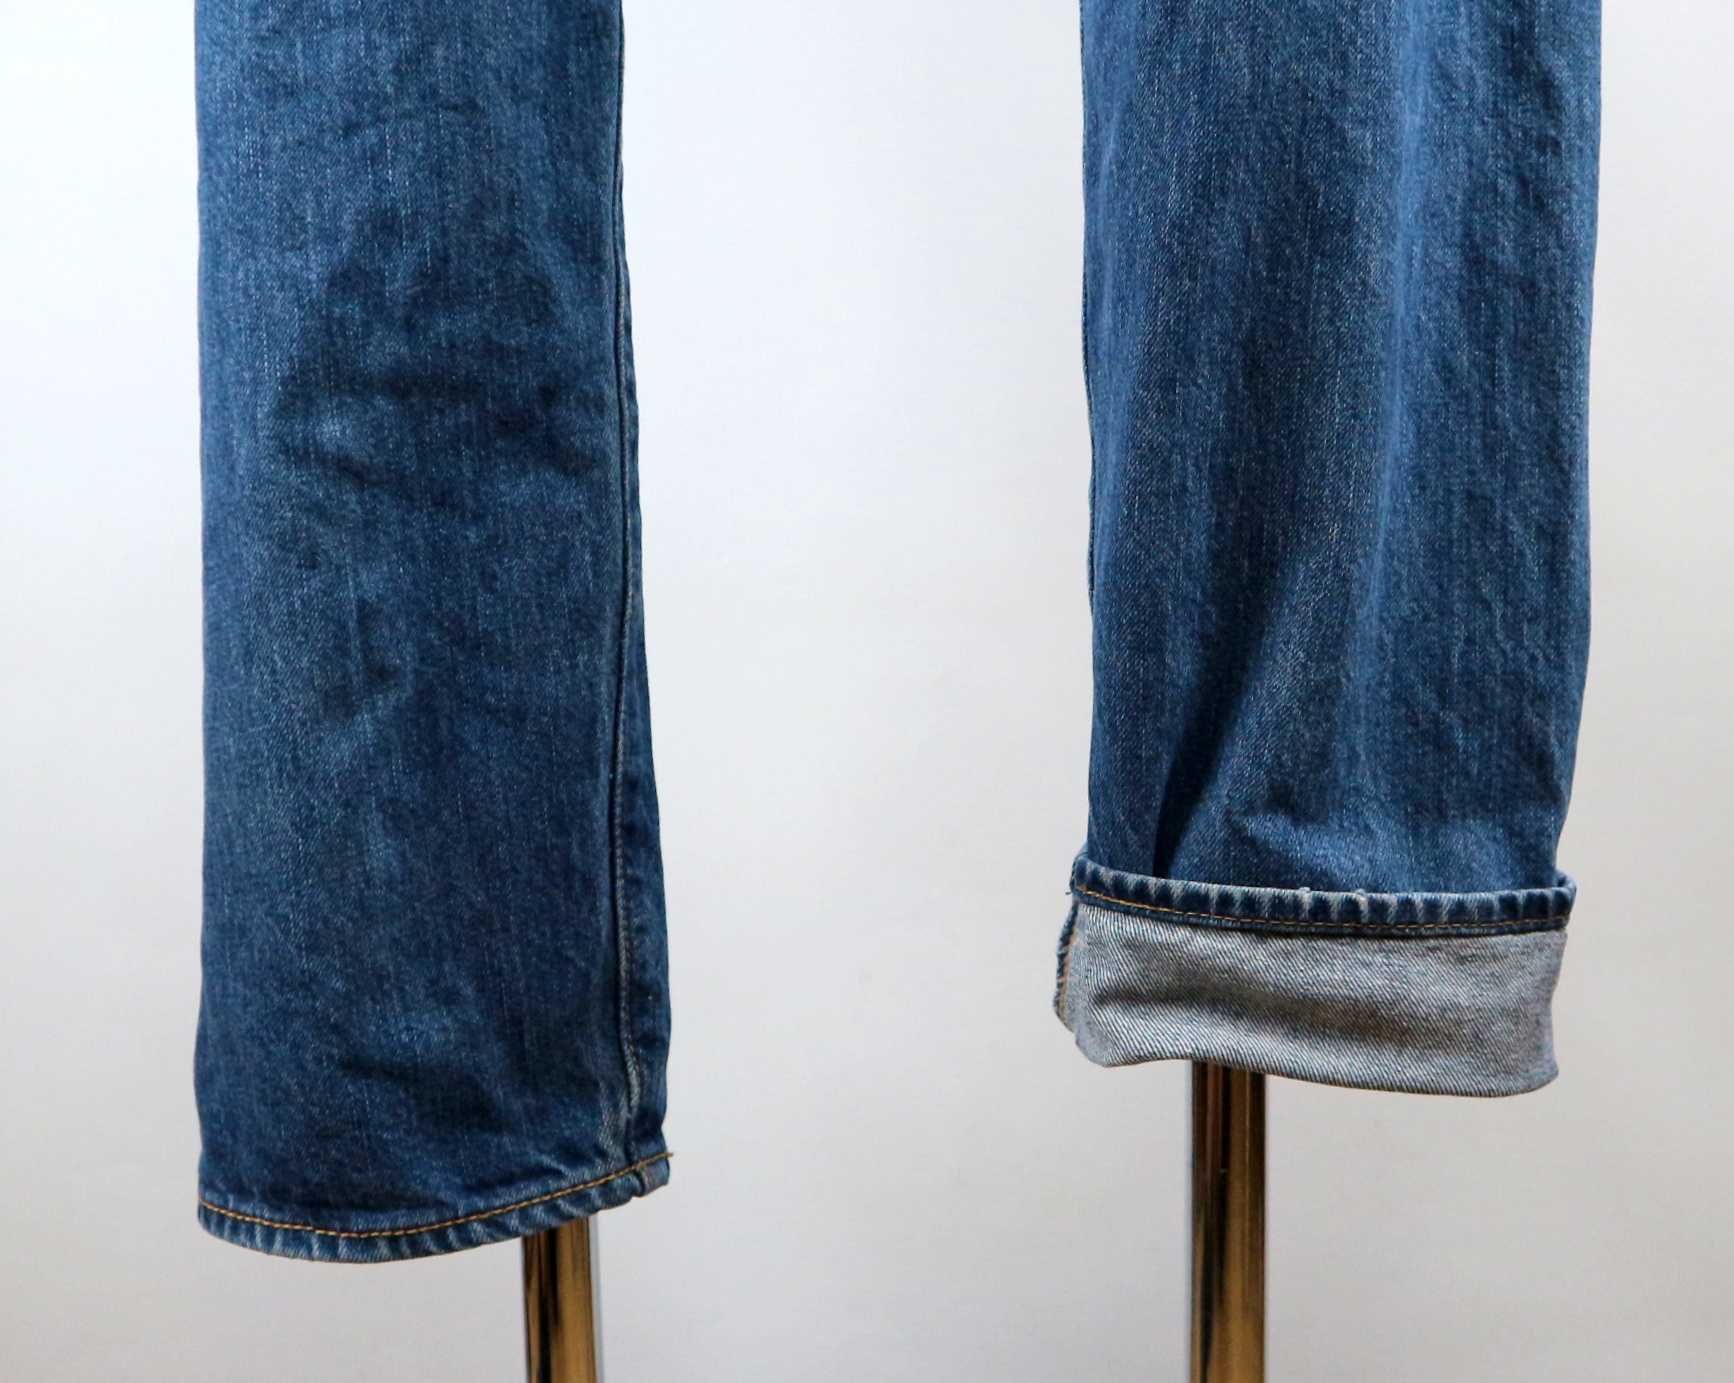 Levis 501 CT spodnie jeansy W36 L32 pas 2 x 48 cm